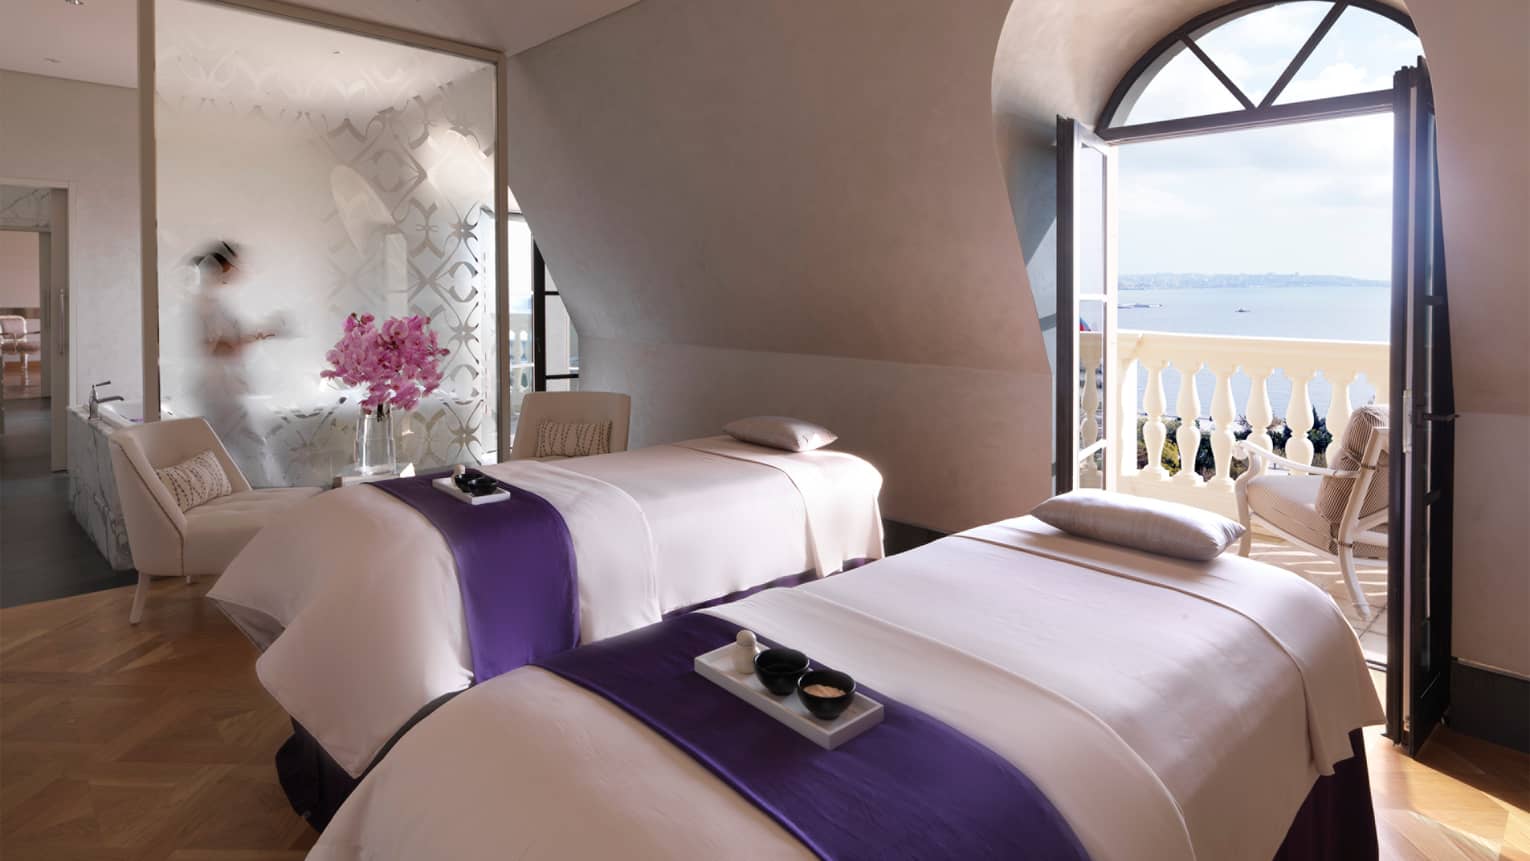 Spa with two massage beds by open balcony door overlooking ocean